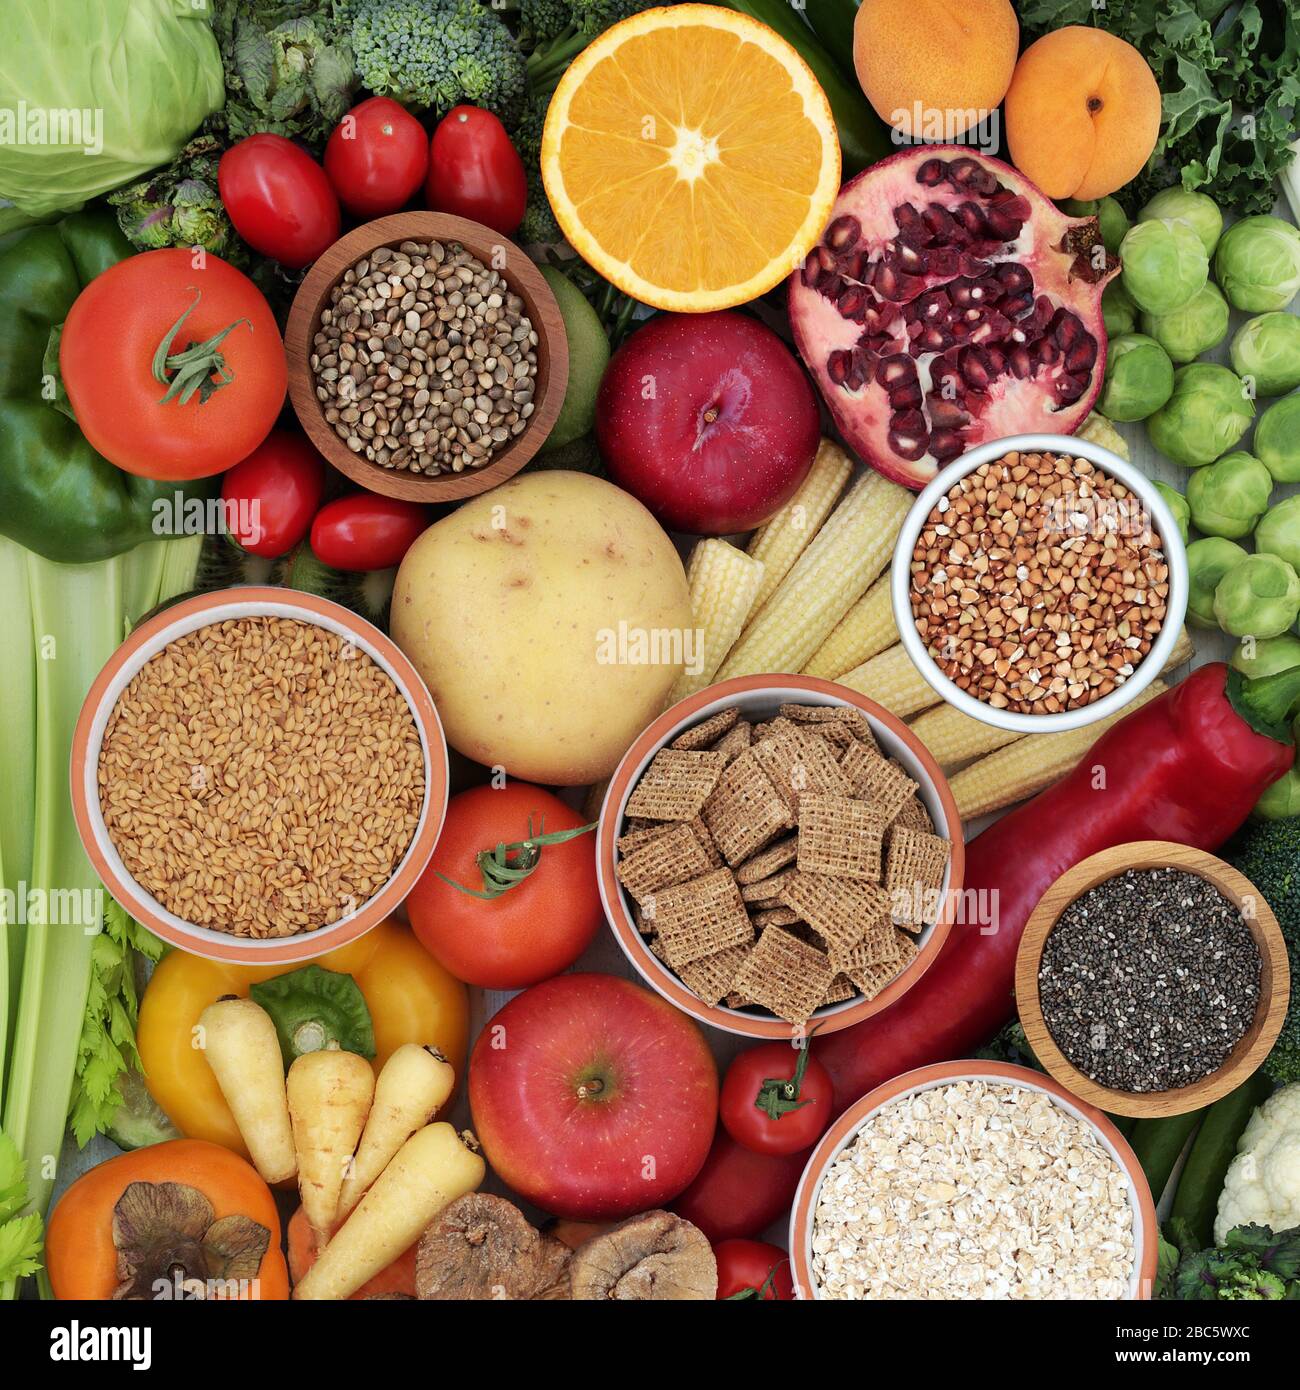 Concetto alimentare sano ad alta fibra alimentare con antiossidanti, omega 3, vitamine e proteine. Cibo di salute per abbassare la pressione sanguigna & colesterolo. Foto Stock